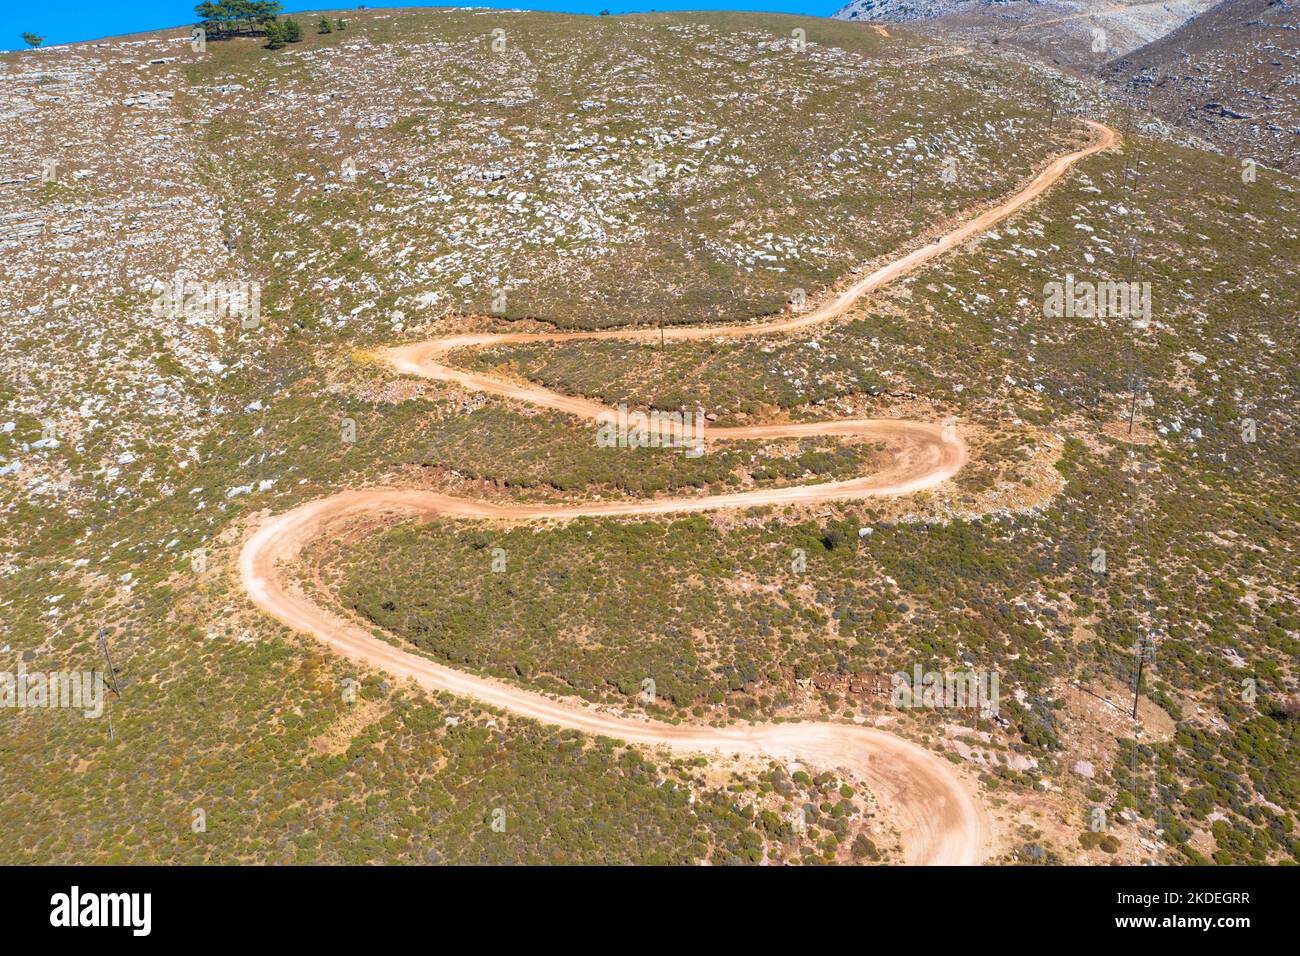 Espectacular vista aérea con pista serpentina fuera de carretera hasta la cima de la montaña Attavyros. La montaña más alta de la isla de Rodas, Grecia. Foto de stock